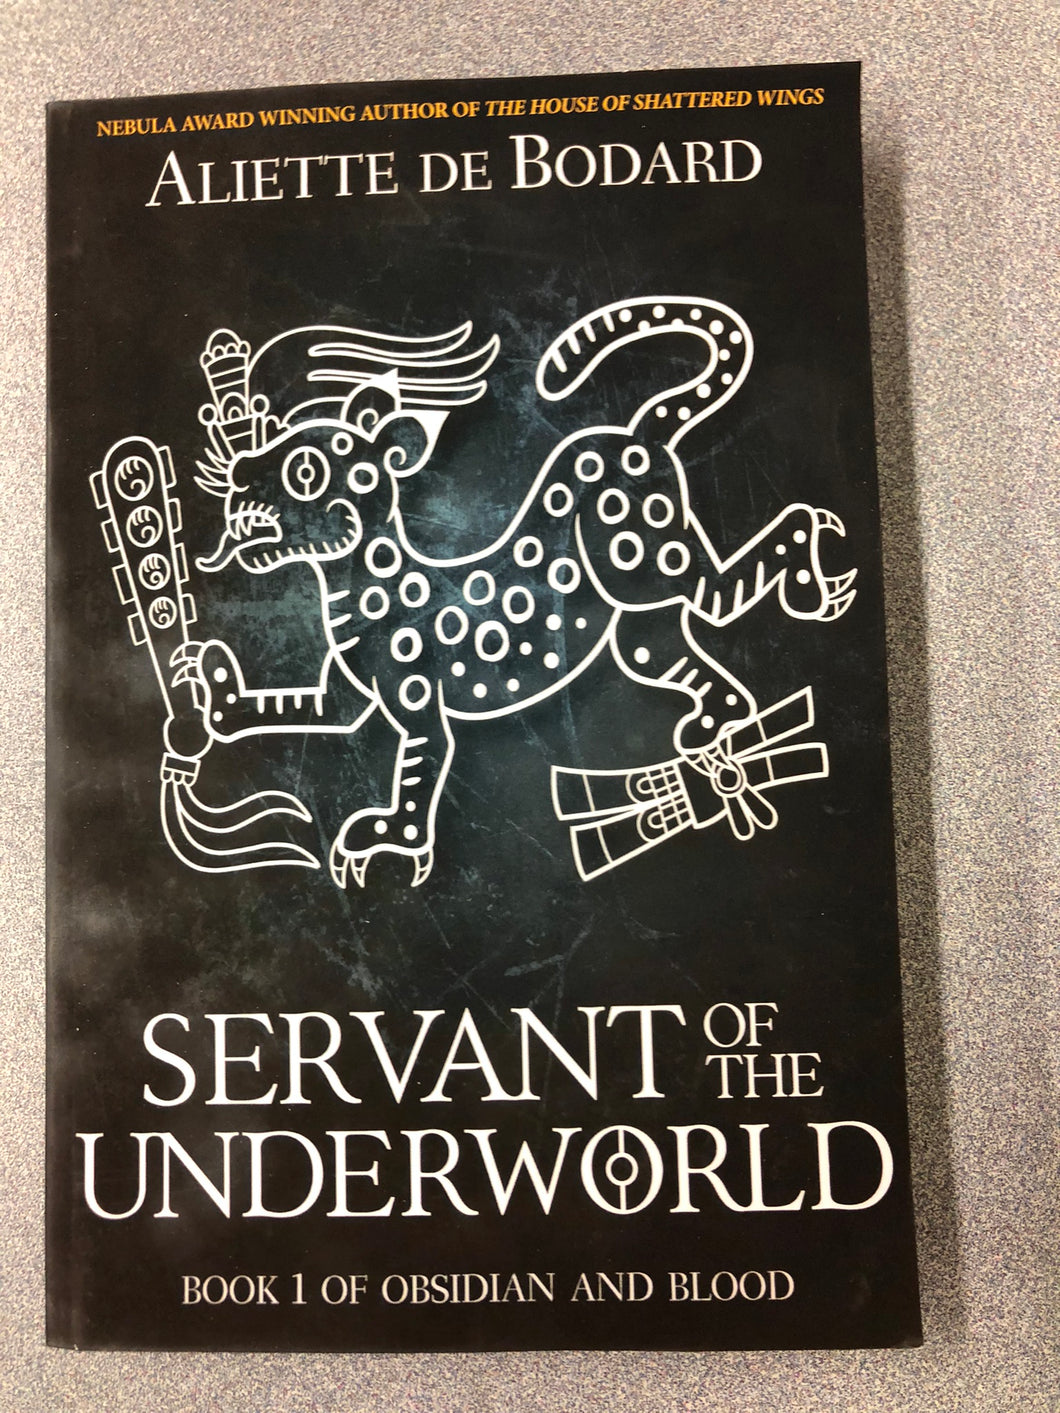 De Bodard, Aliette, Servant of the Underworld: Book 1 of Obsidian and Blood, [2010] SF 8/22